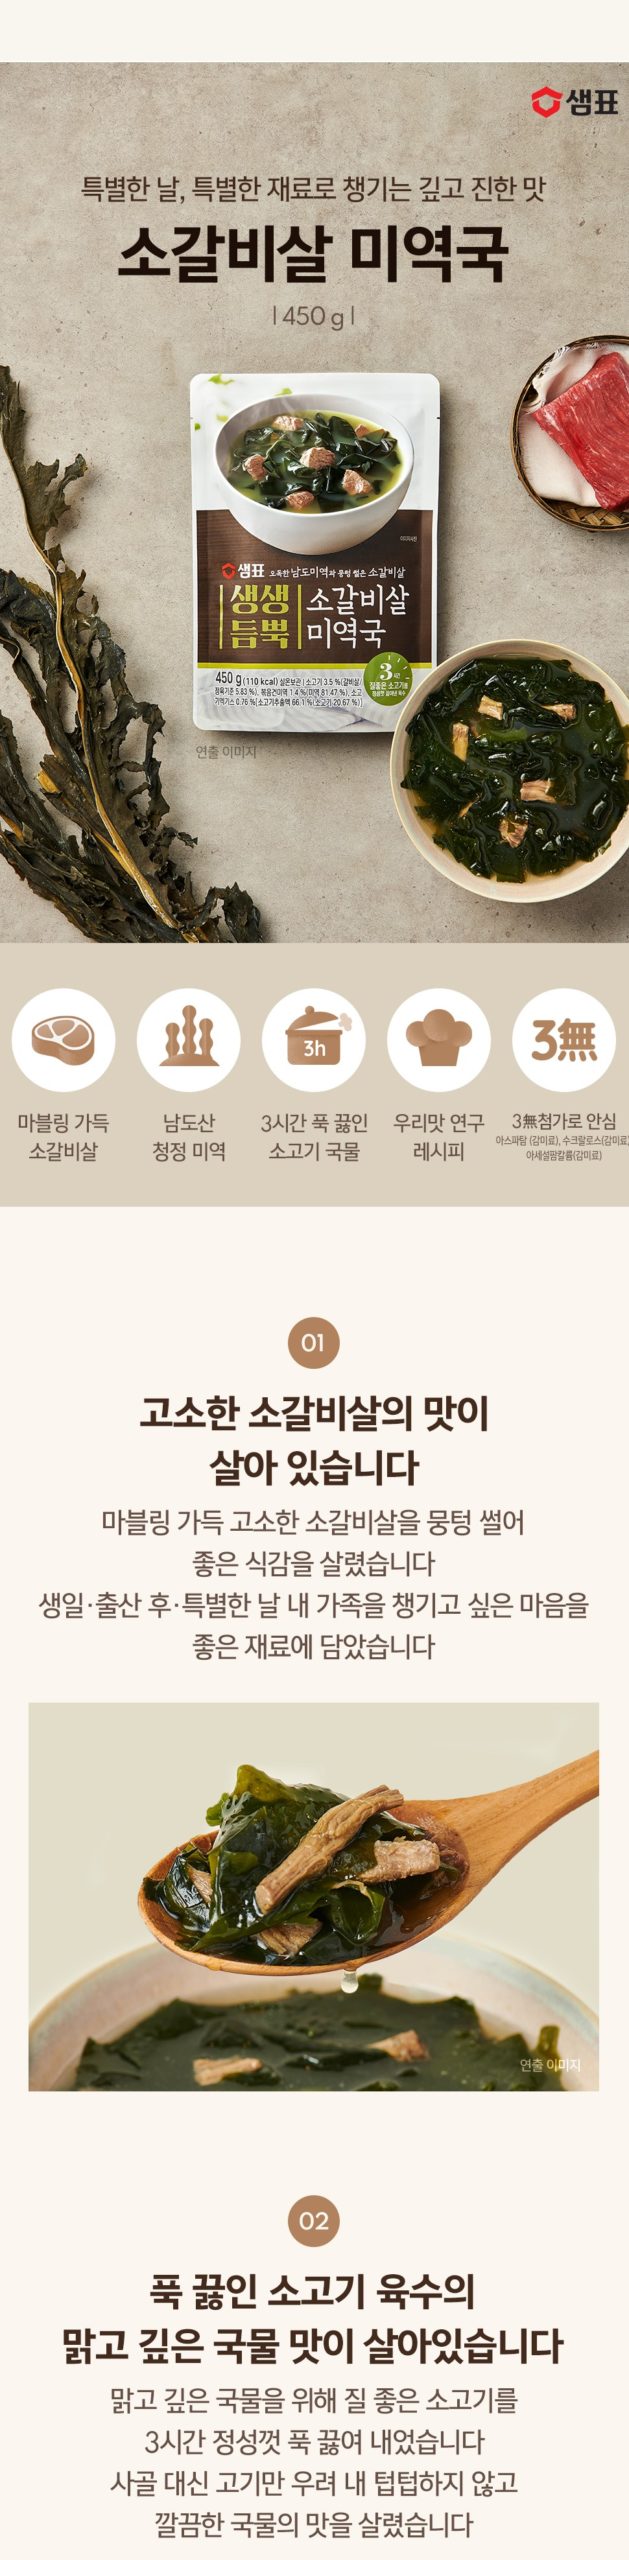 韓國食品-[Sempio] Beef Kalbi Seaweed Soup 450g